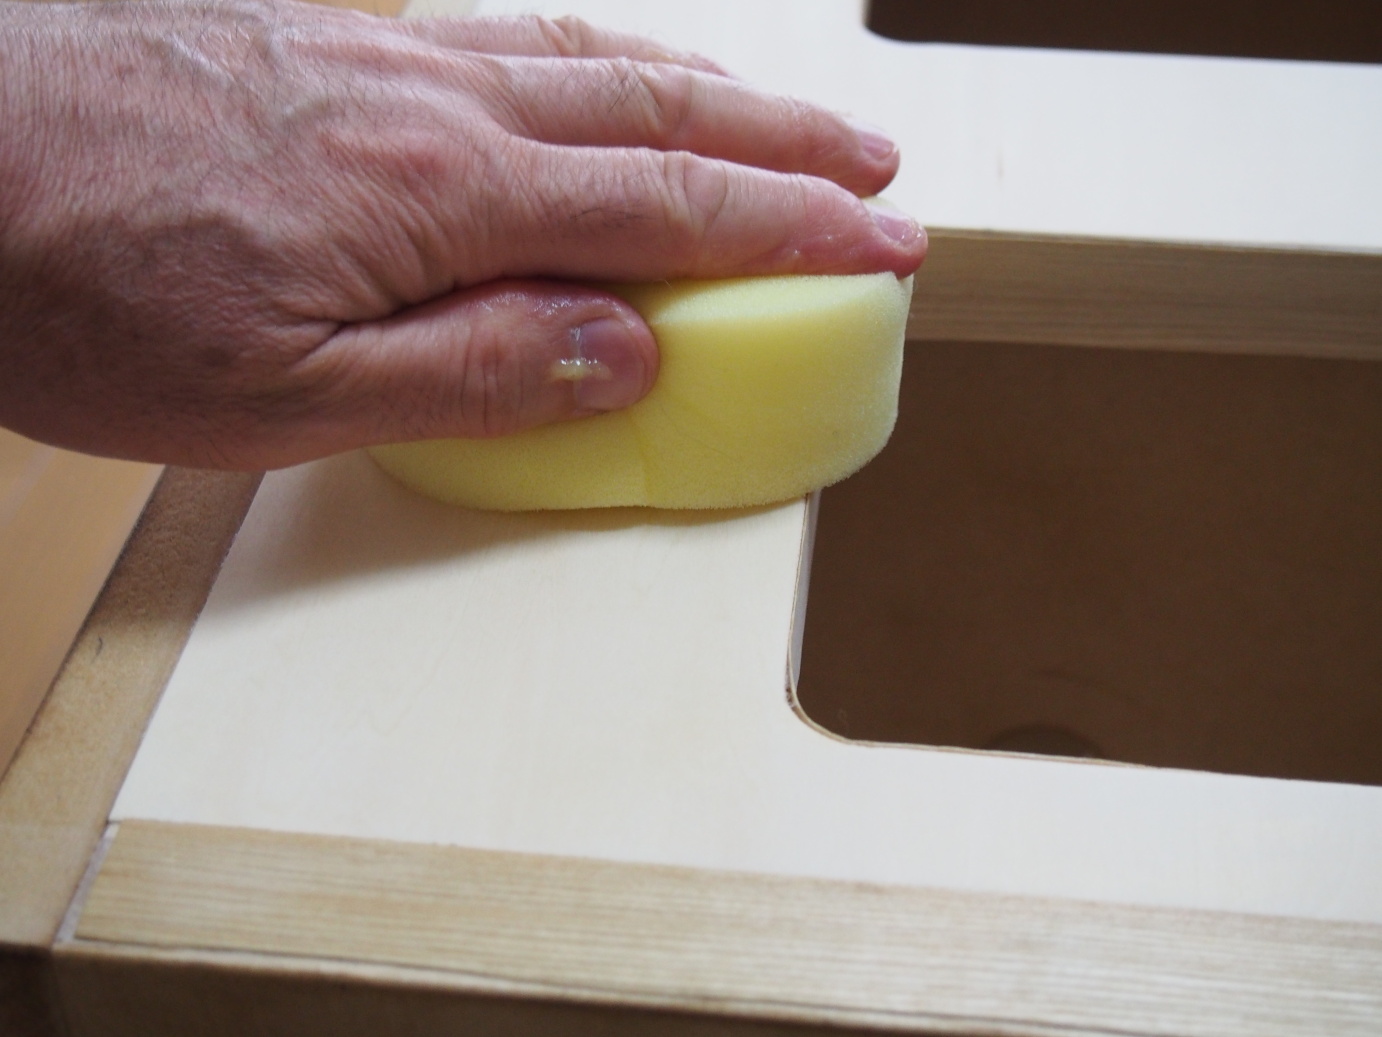 7. Applying wood wax